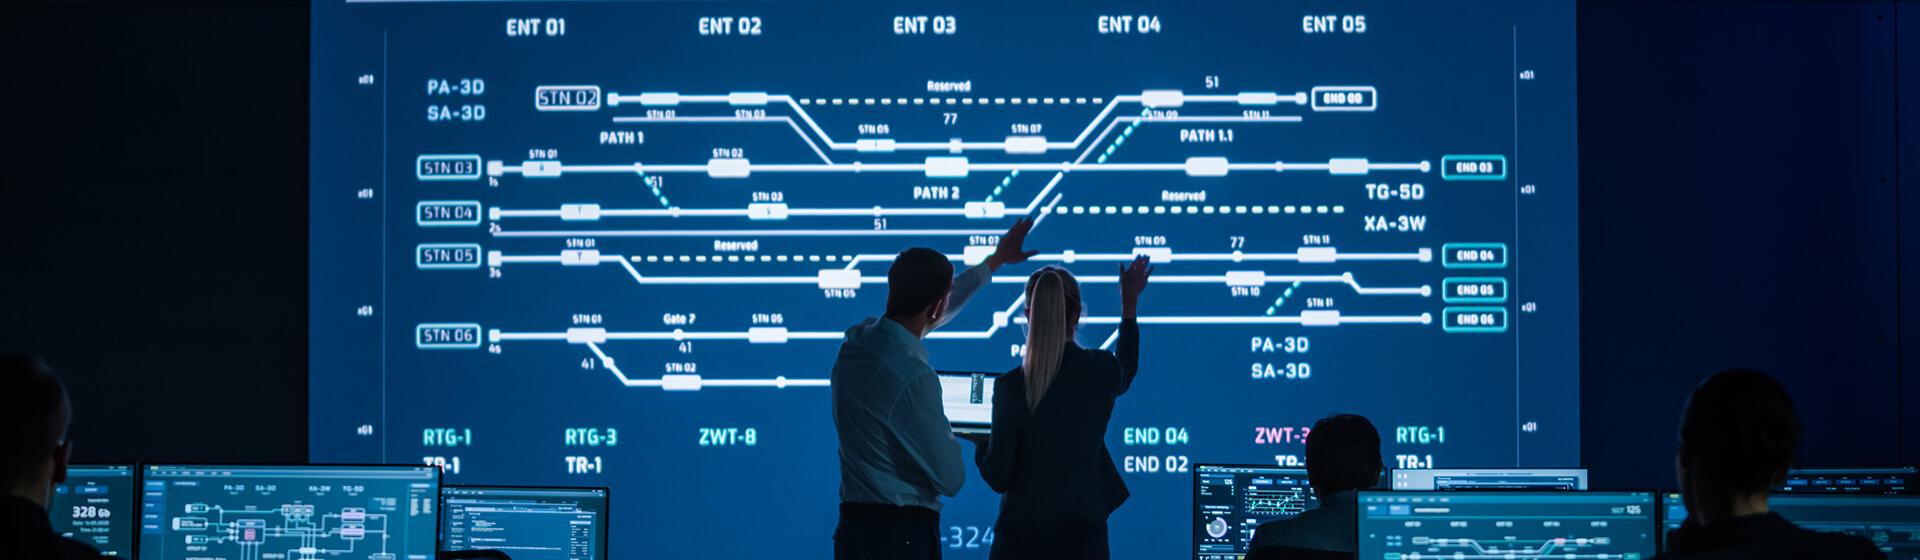 ein Mitarbeiter und eine Mitarbeiterin nutzen einen großen Überwachungsbildschirm innerhalb eines Kontrollraums, auf dem die Schienenstrecken eines Schiffsterminals zu sehen sind.